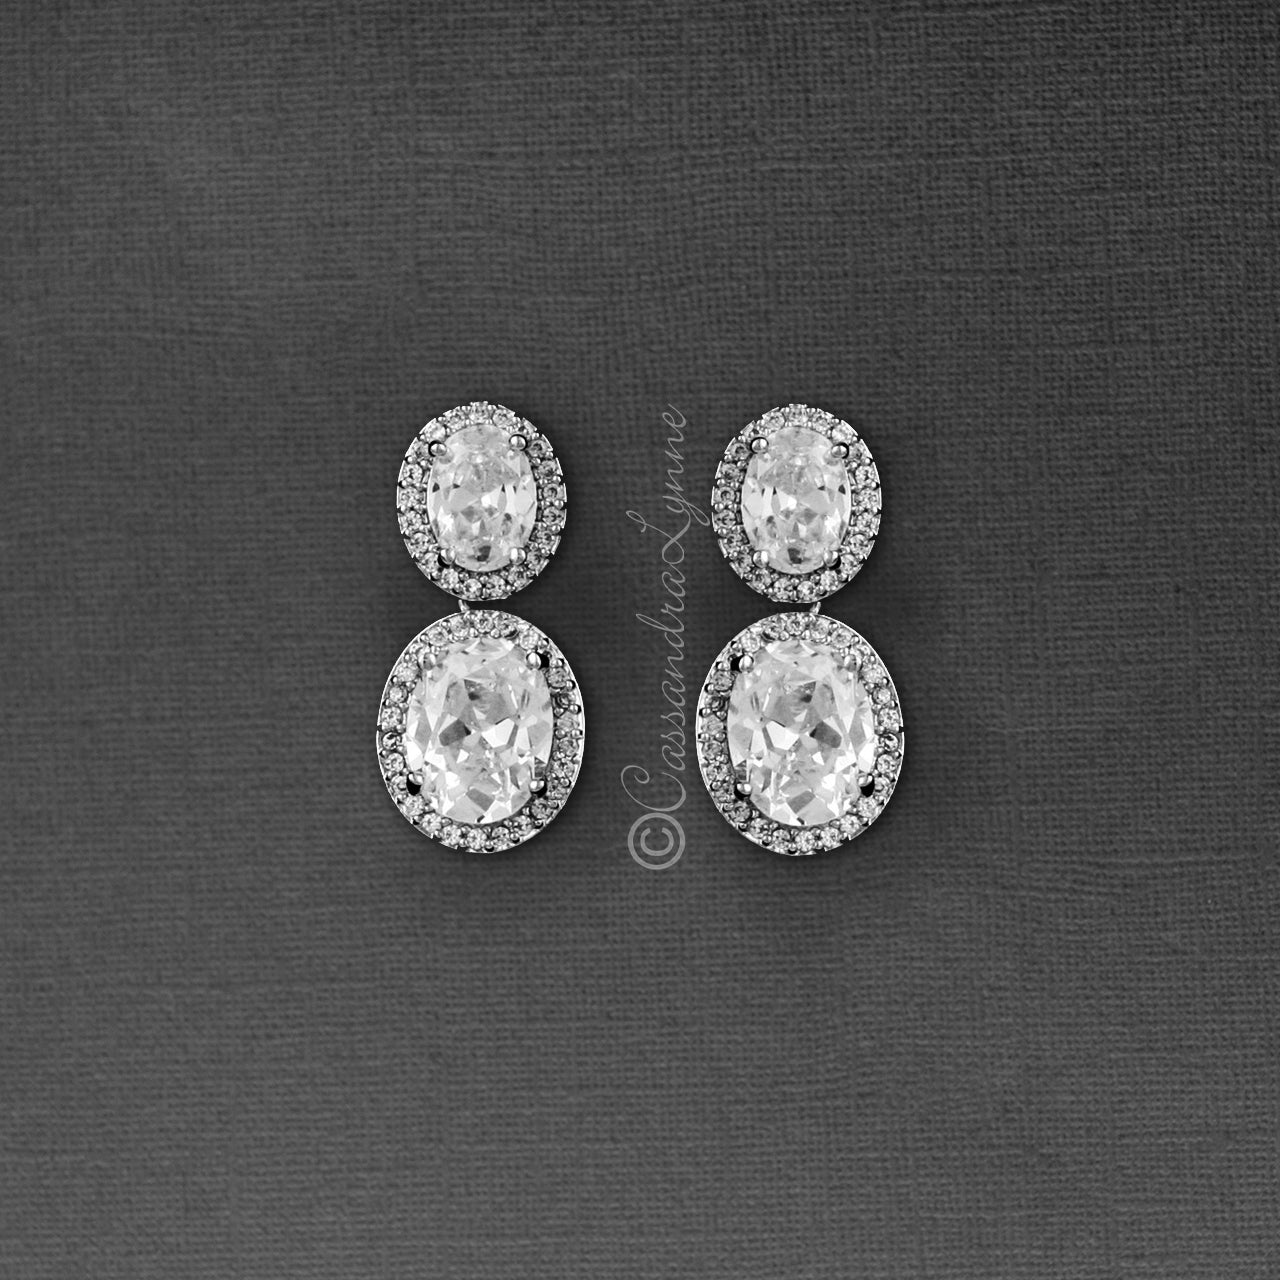 Double Oval Cut CZ Drop Earrings in Silver